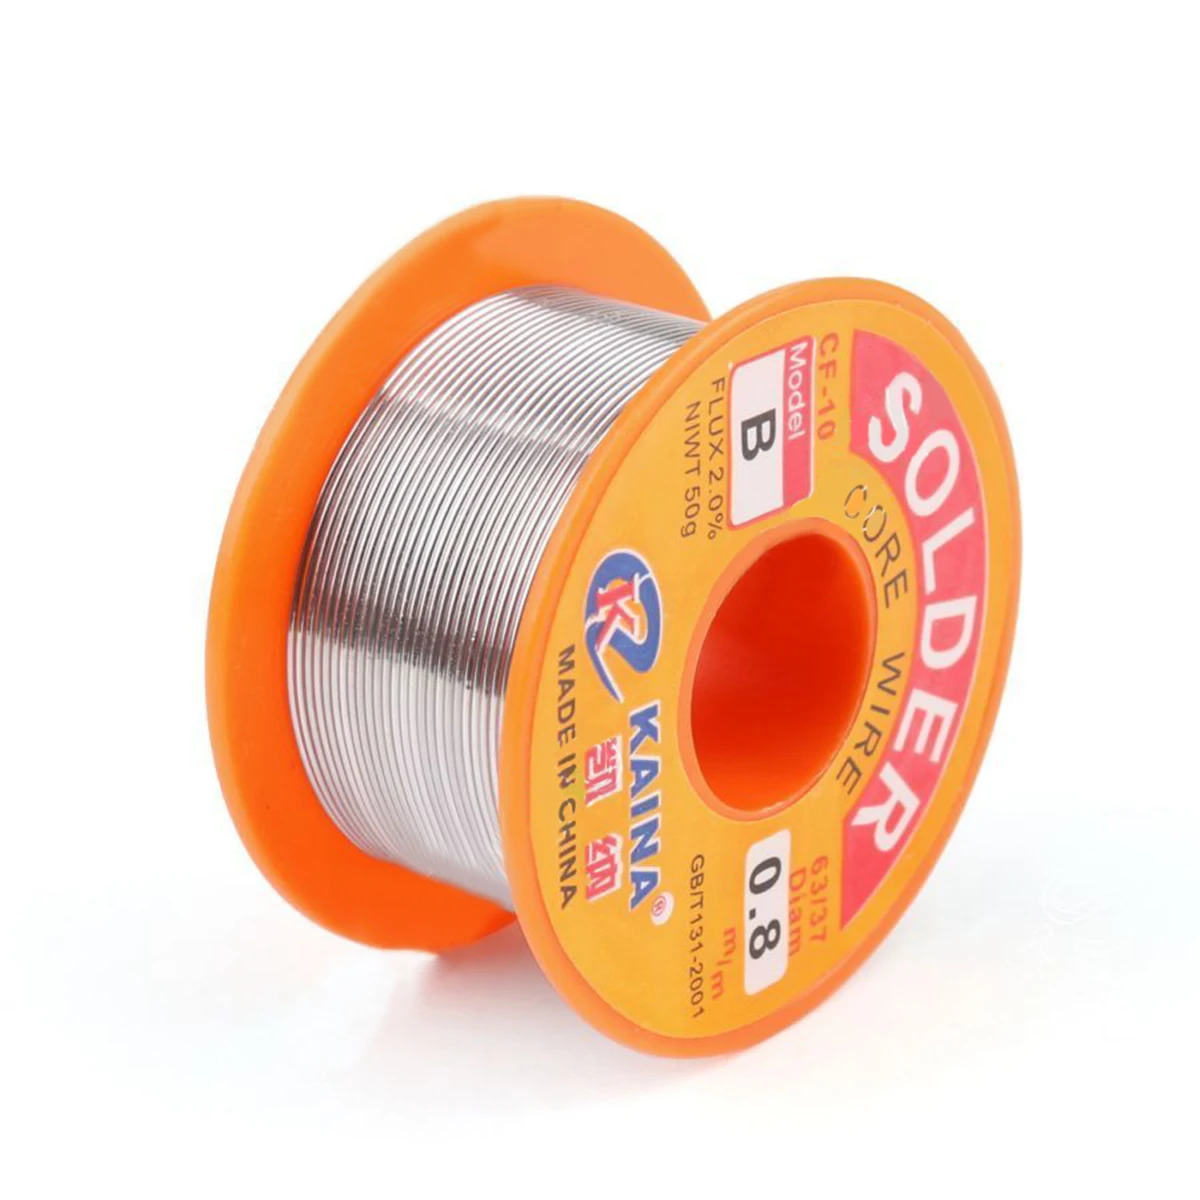 OSSIEAO 63/37 0.8mm 50g Tin Lead Rosin Core Solder Flux Soldering Welding Iron Wire Reel